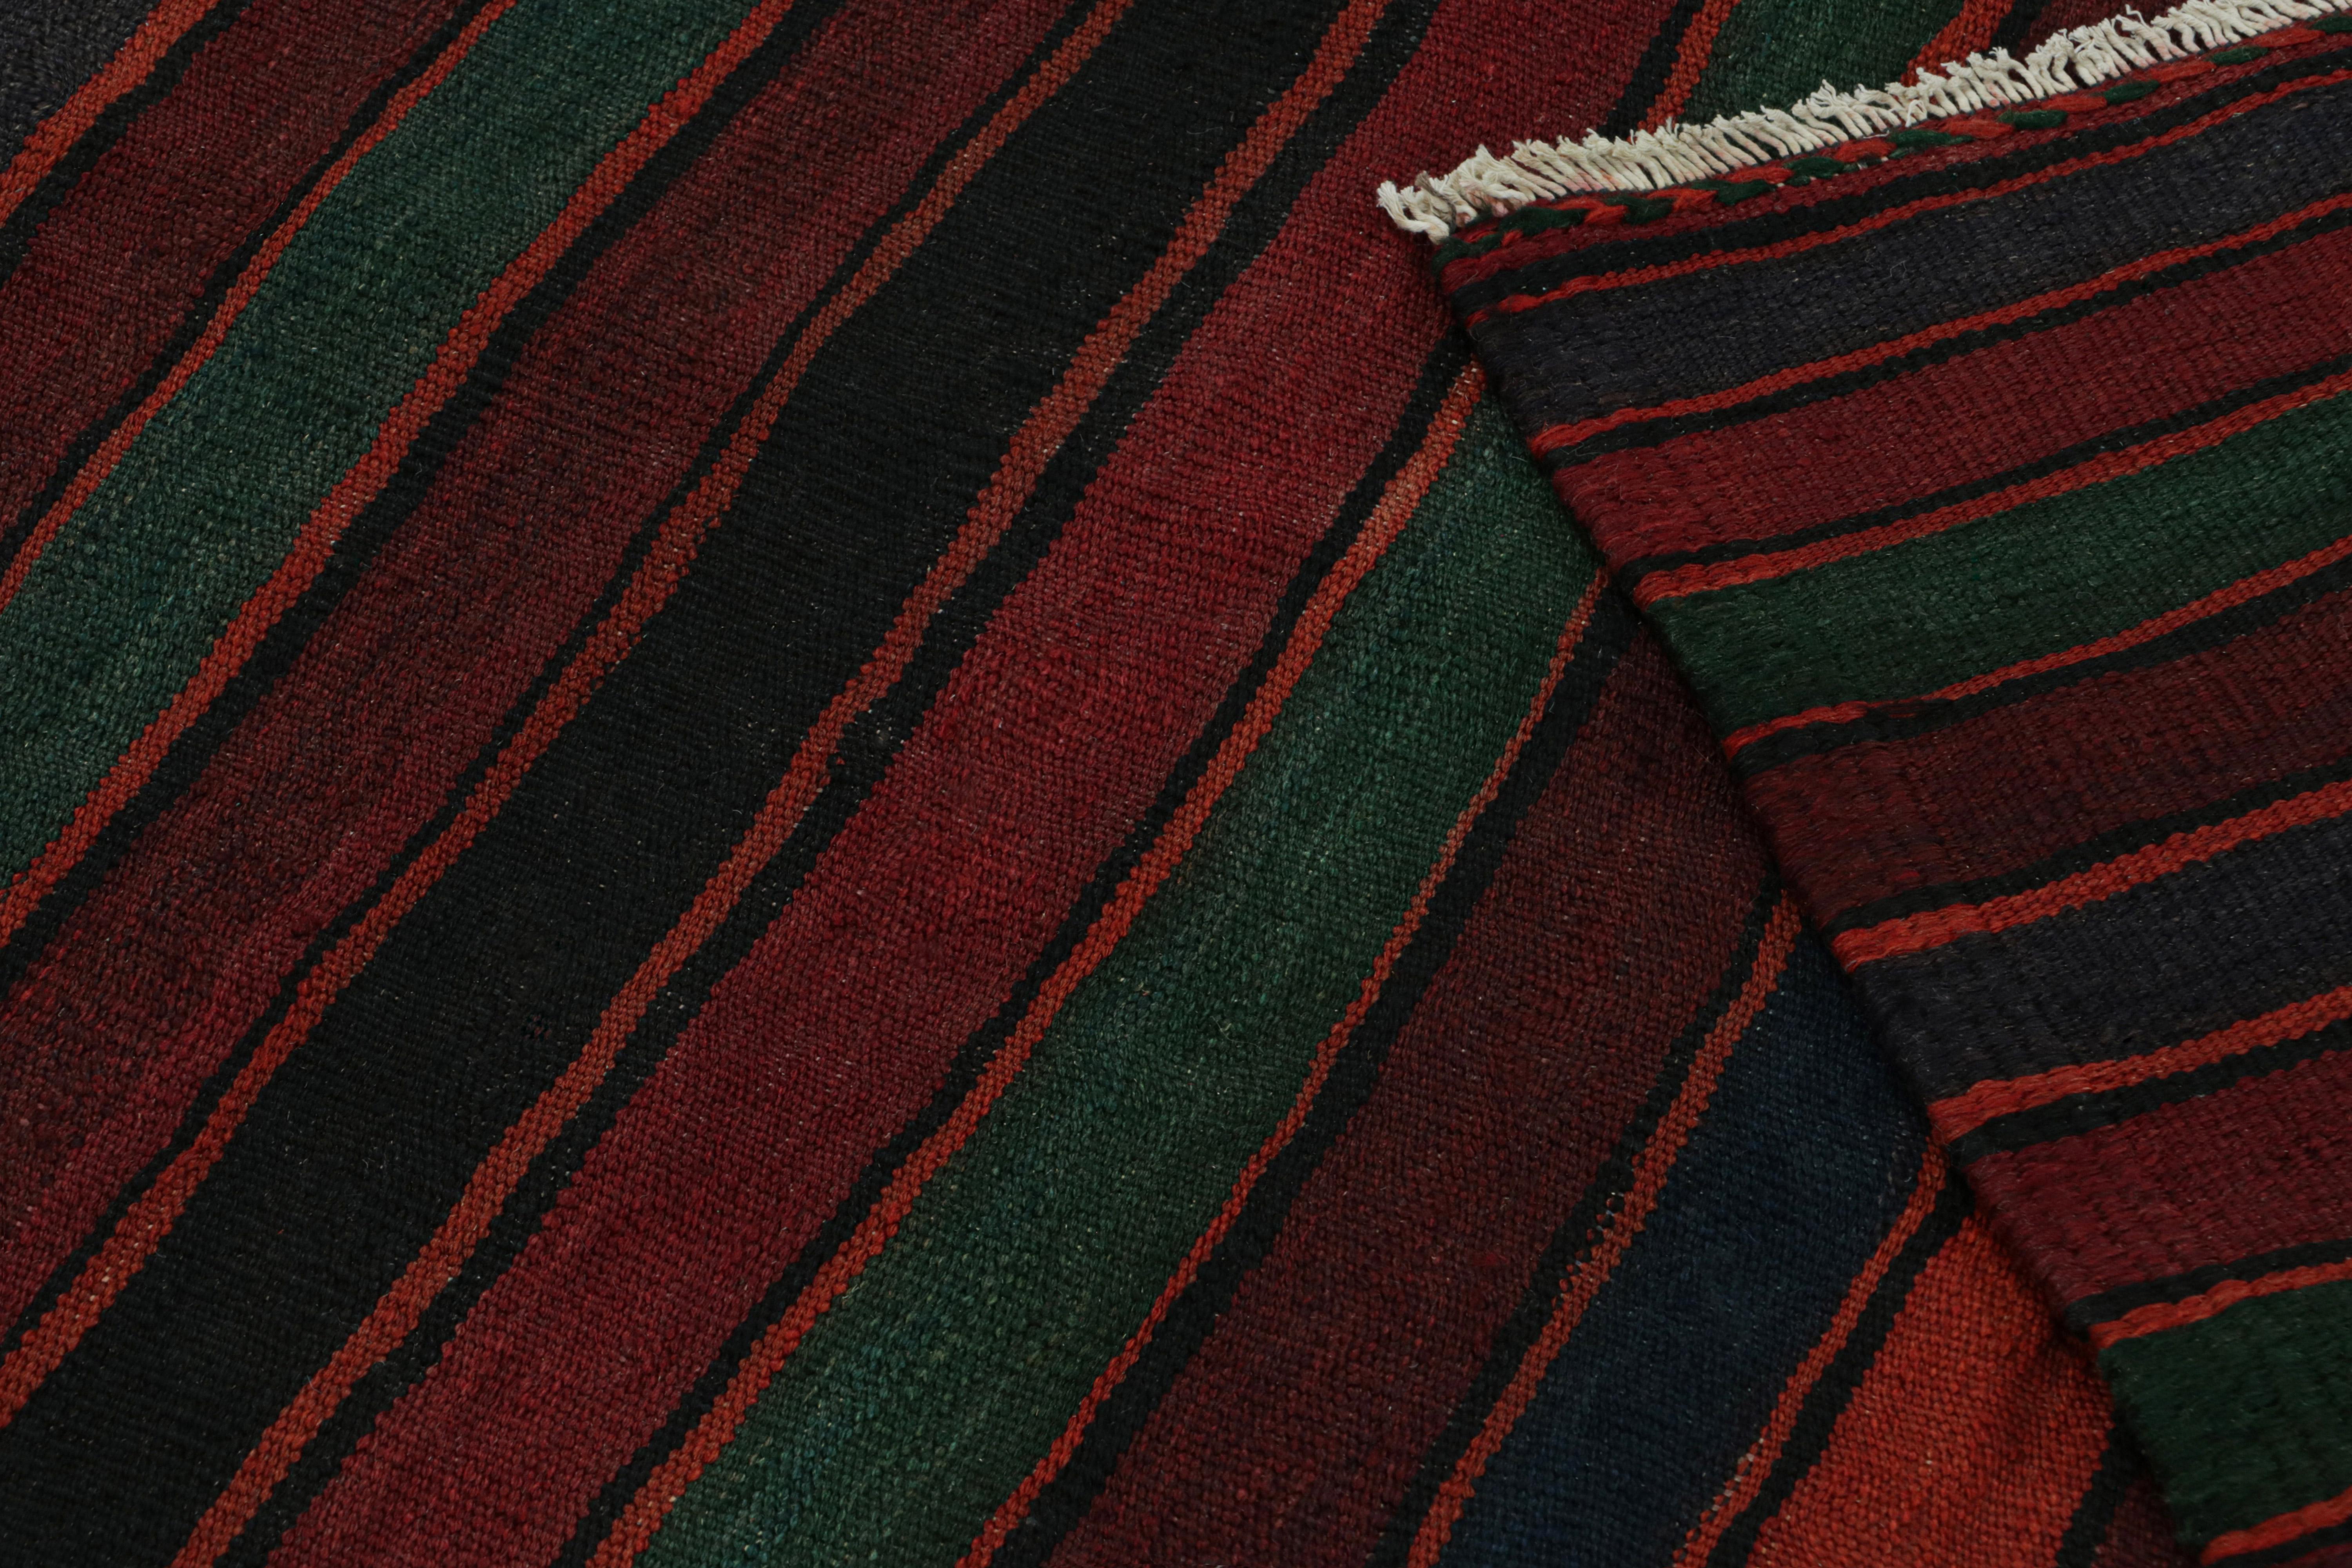 Wool Vintage Afghani tribal Kilim rug, in Burgundy, from Rug & Kilim For Sale